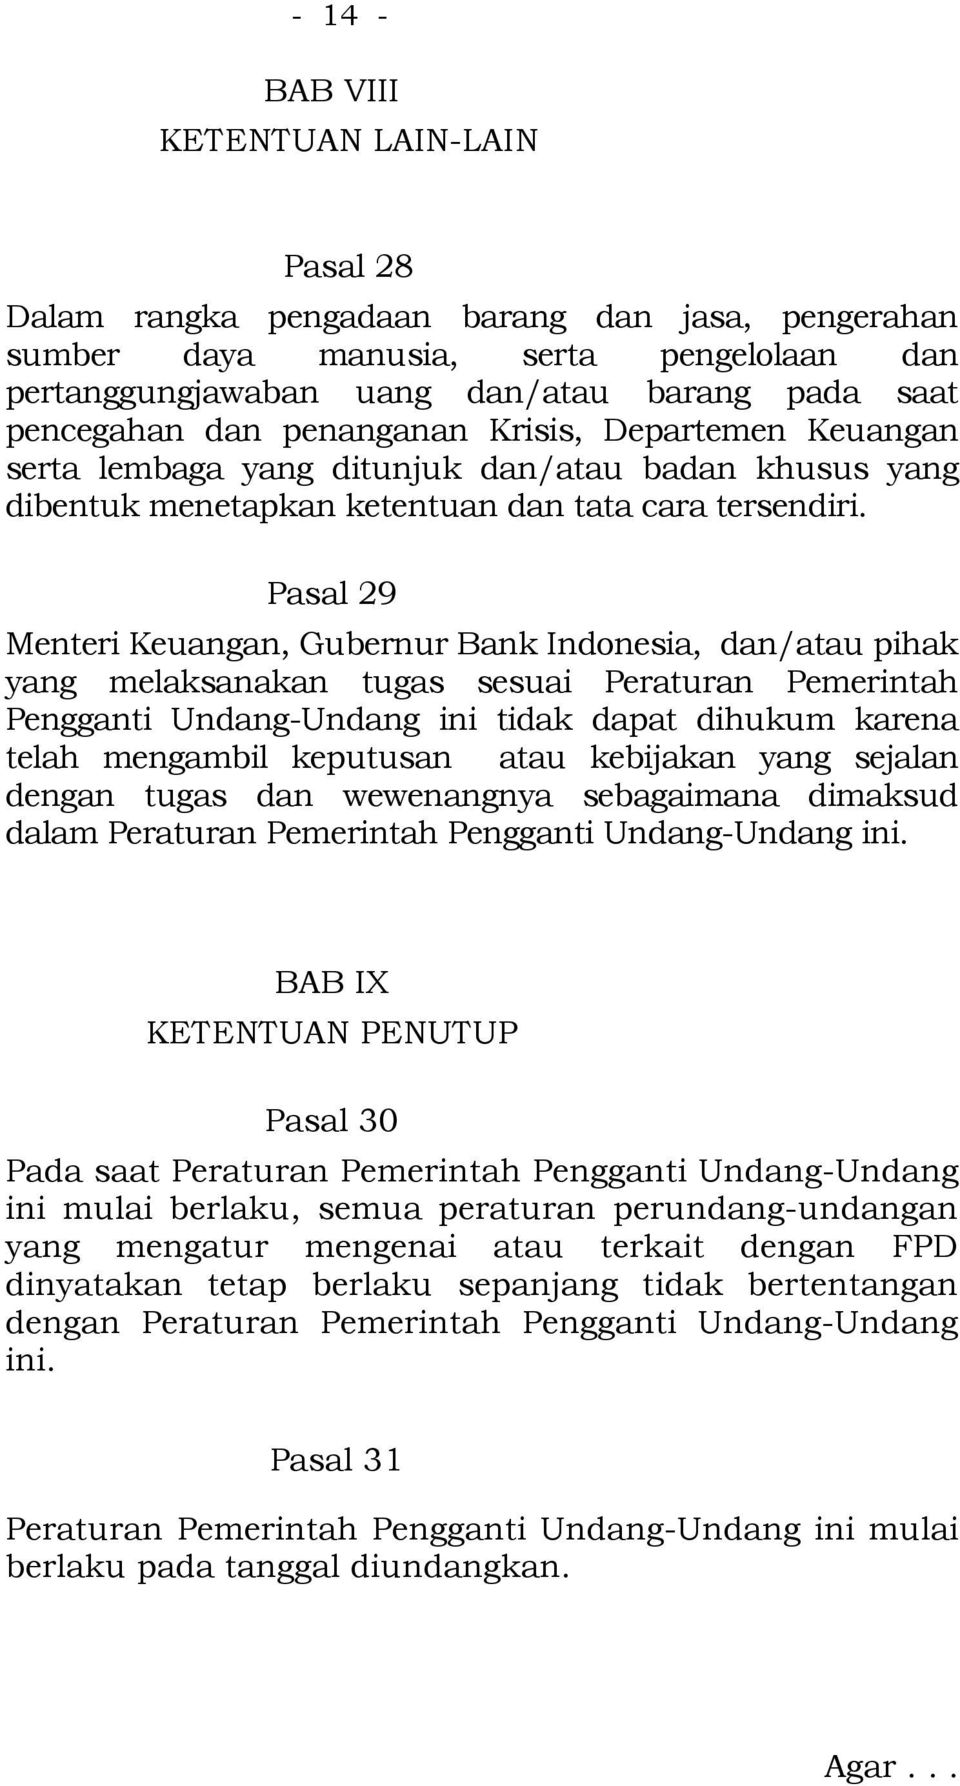 Pasal 29 Menteri Keuangan, Gubernur Bank Indonesia, dan/atau pihak yang melaksanakan tugas sesuai Peraturan Pemerintah Pengganti Undang-Undang ini tidak dapat dihukum karena telah mengambil keputusan